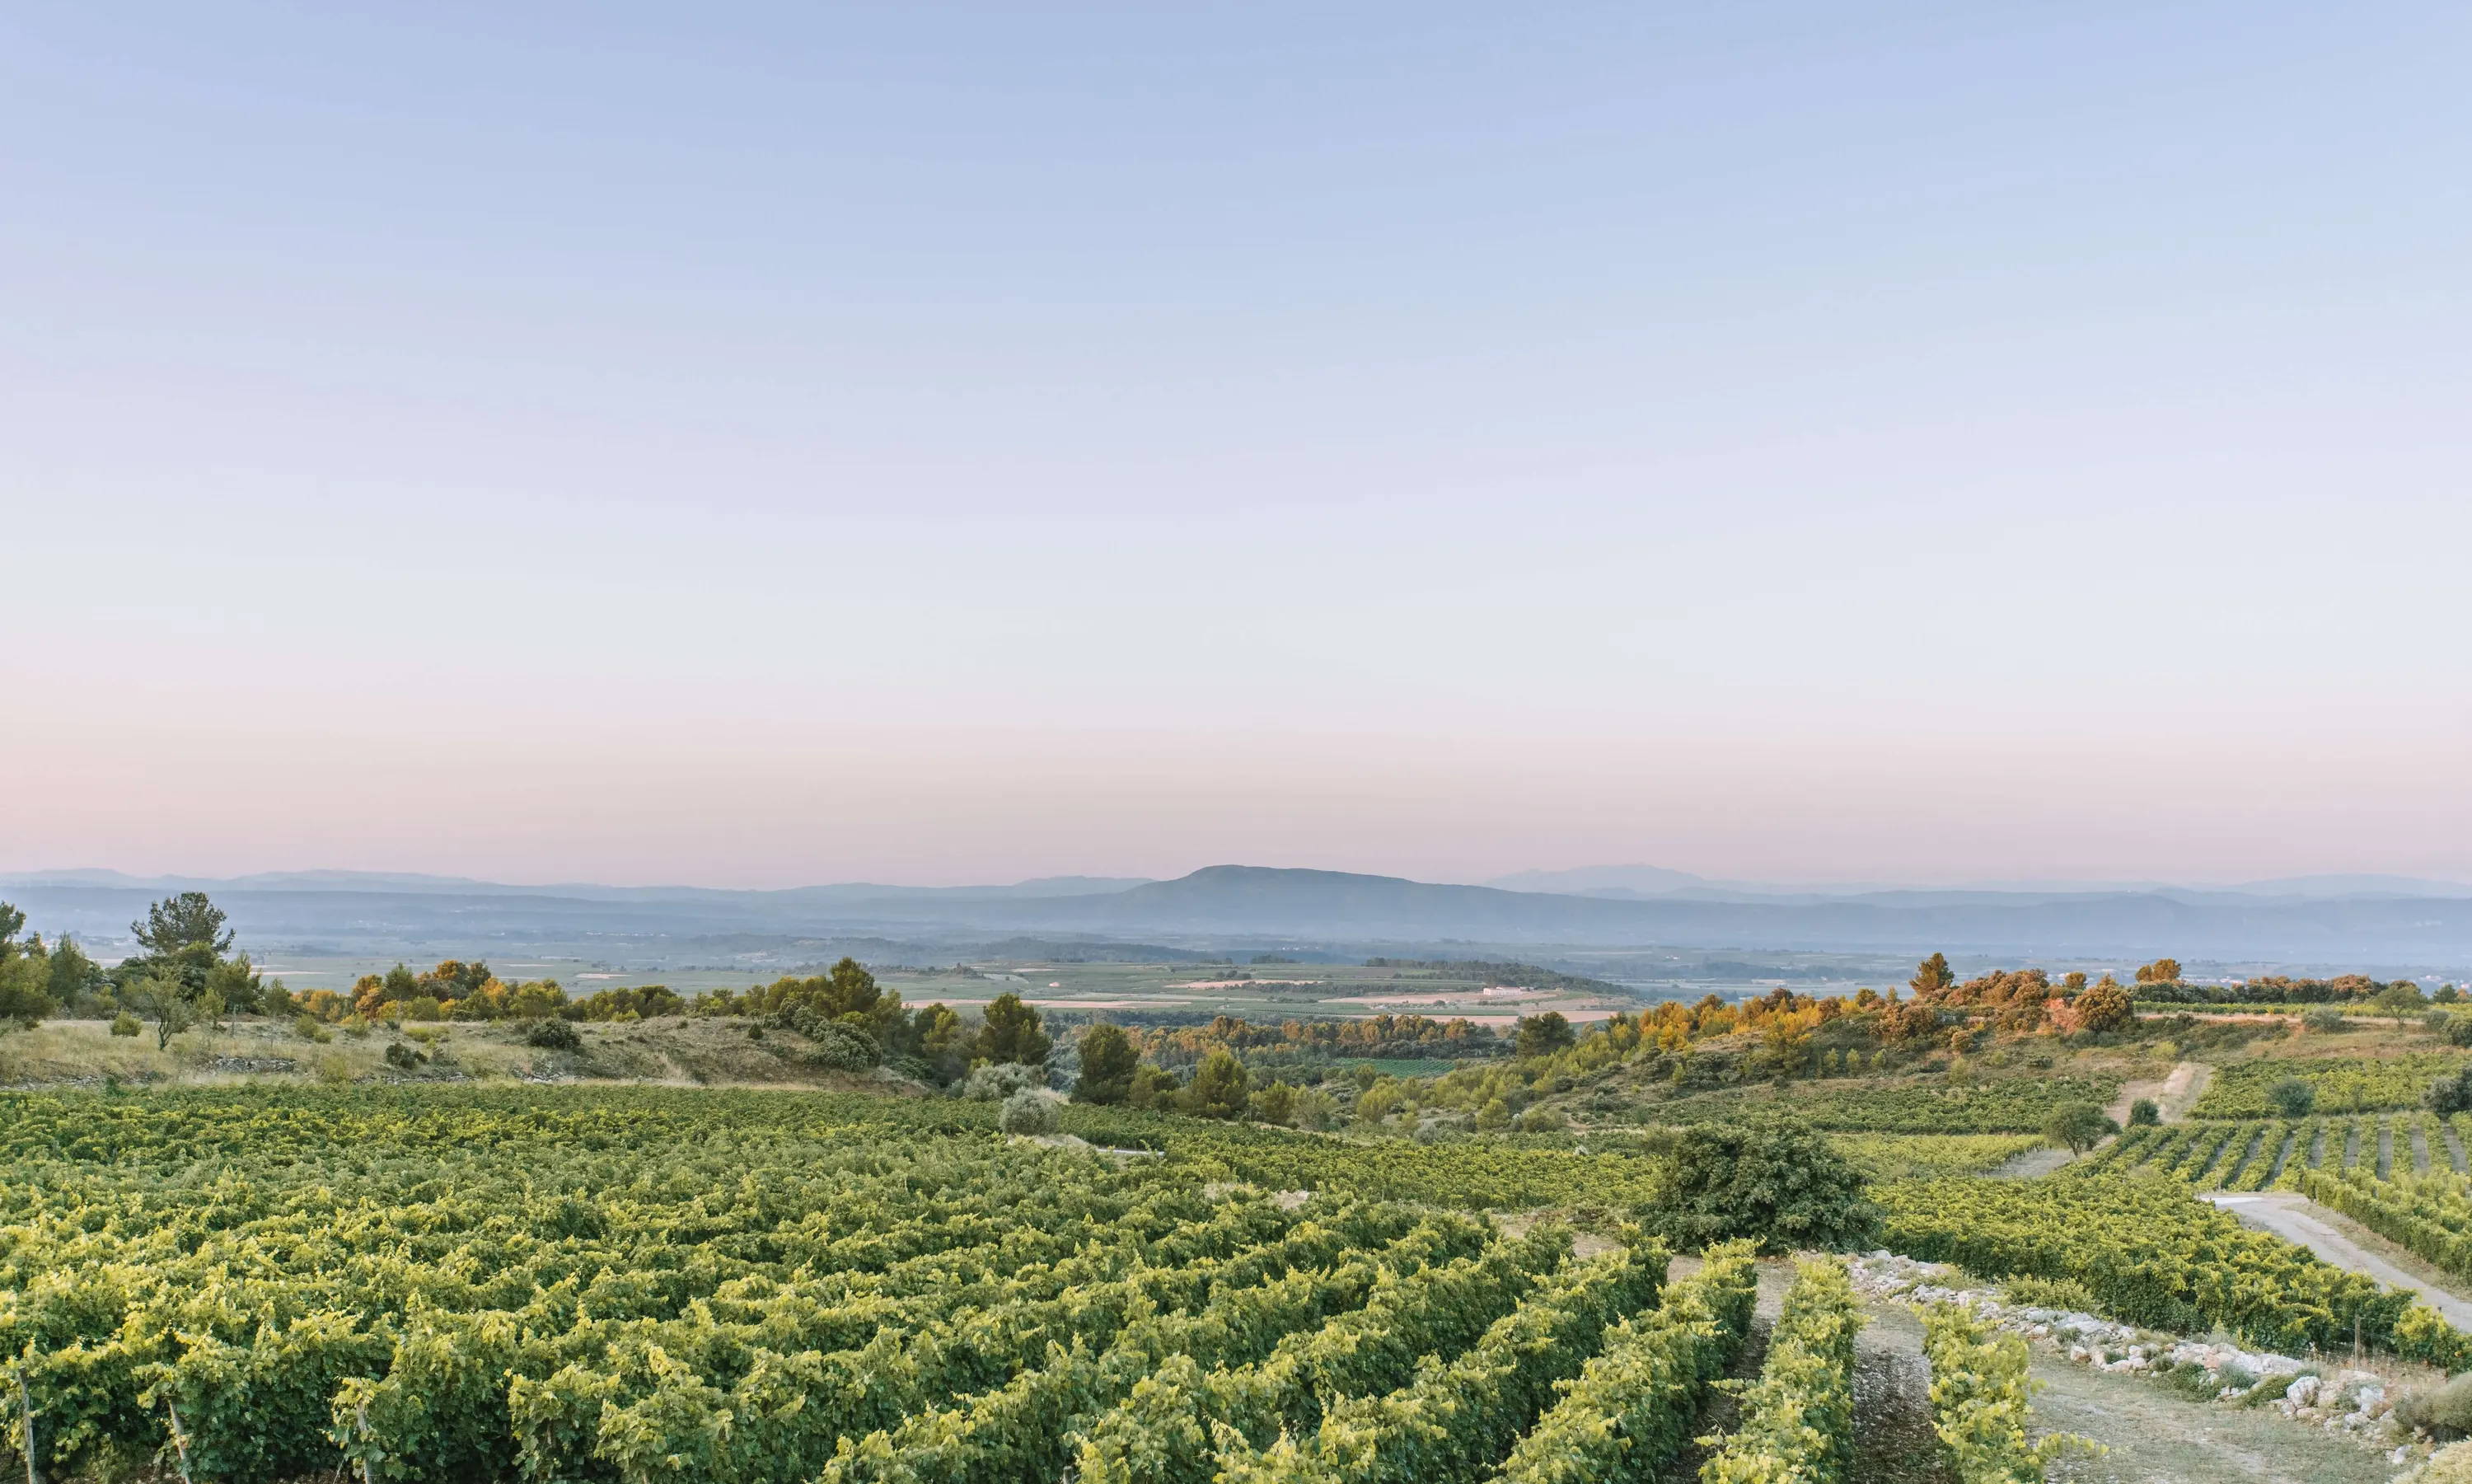 Le vignoble du Minervois, l'un des plus importants de la famille des vins AOC Languedoc